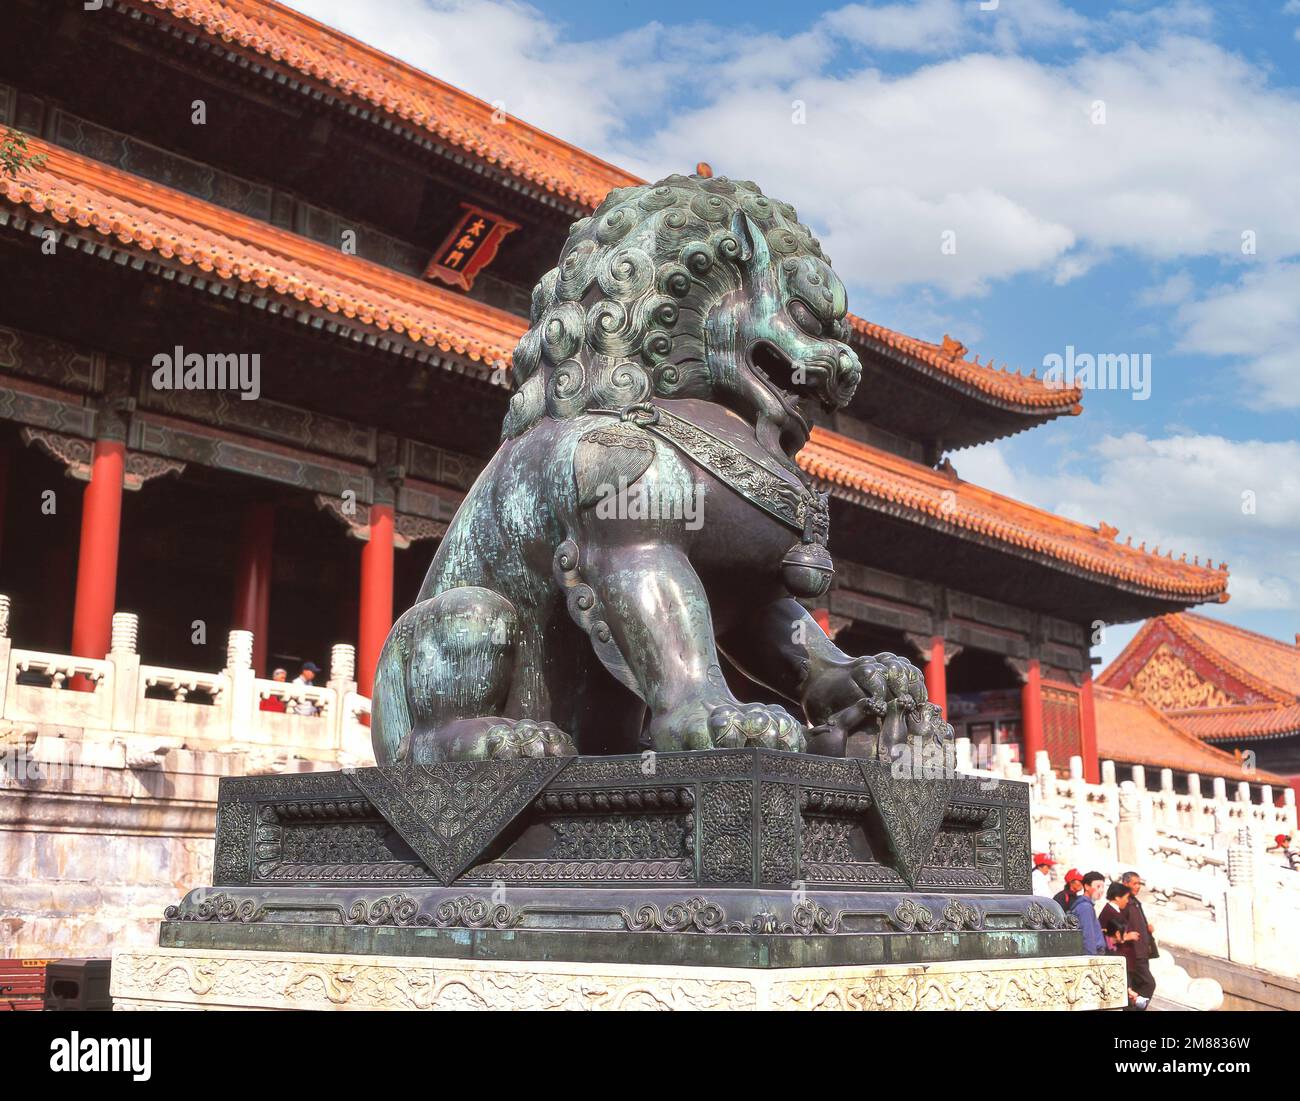 Statua del Leone di bronzo al di fuori della Sala dell'armonia Suprema, Corte esterna della Città Proibita (Zǐjìnchéng), Dongcheng, Pechino, Repubblica popolare Cinese Foto Stock